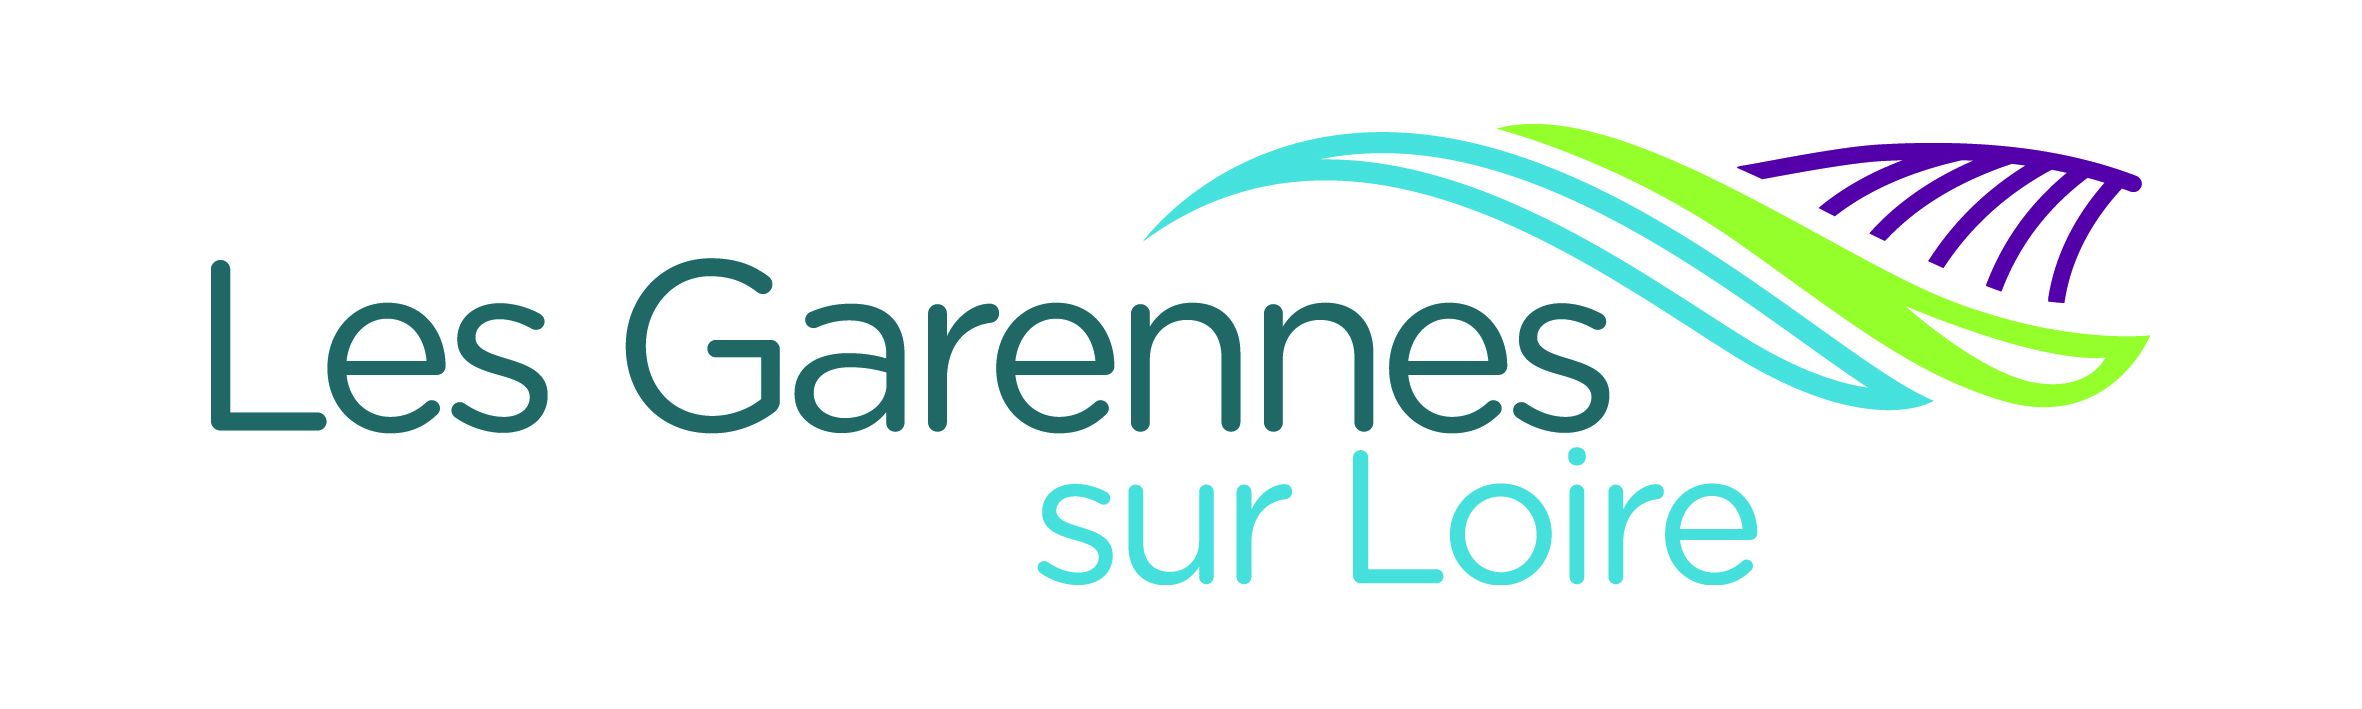 GarennesSurLoire Logo Deüfinitif